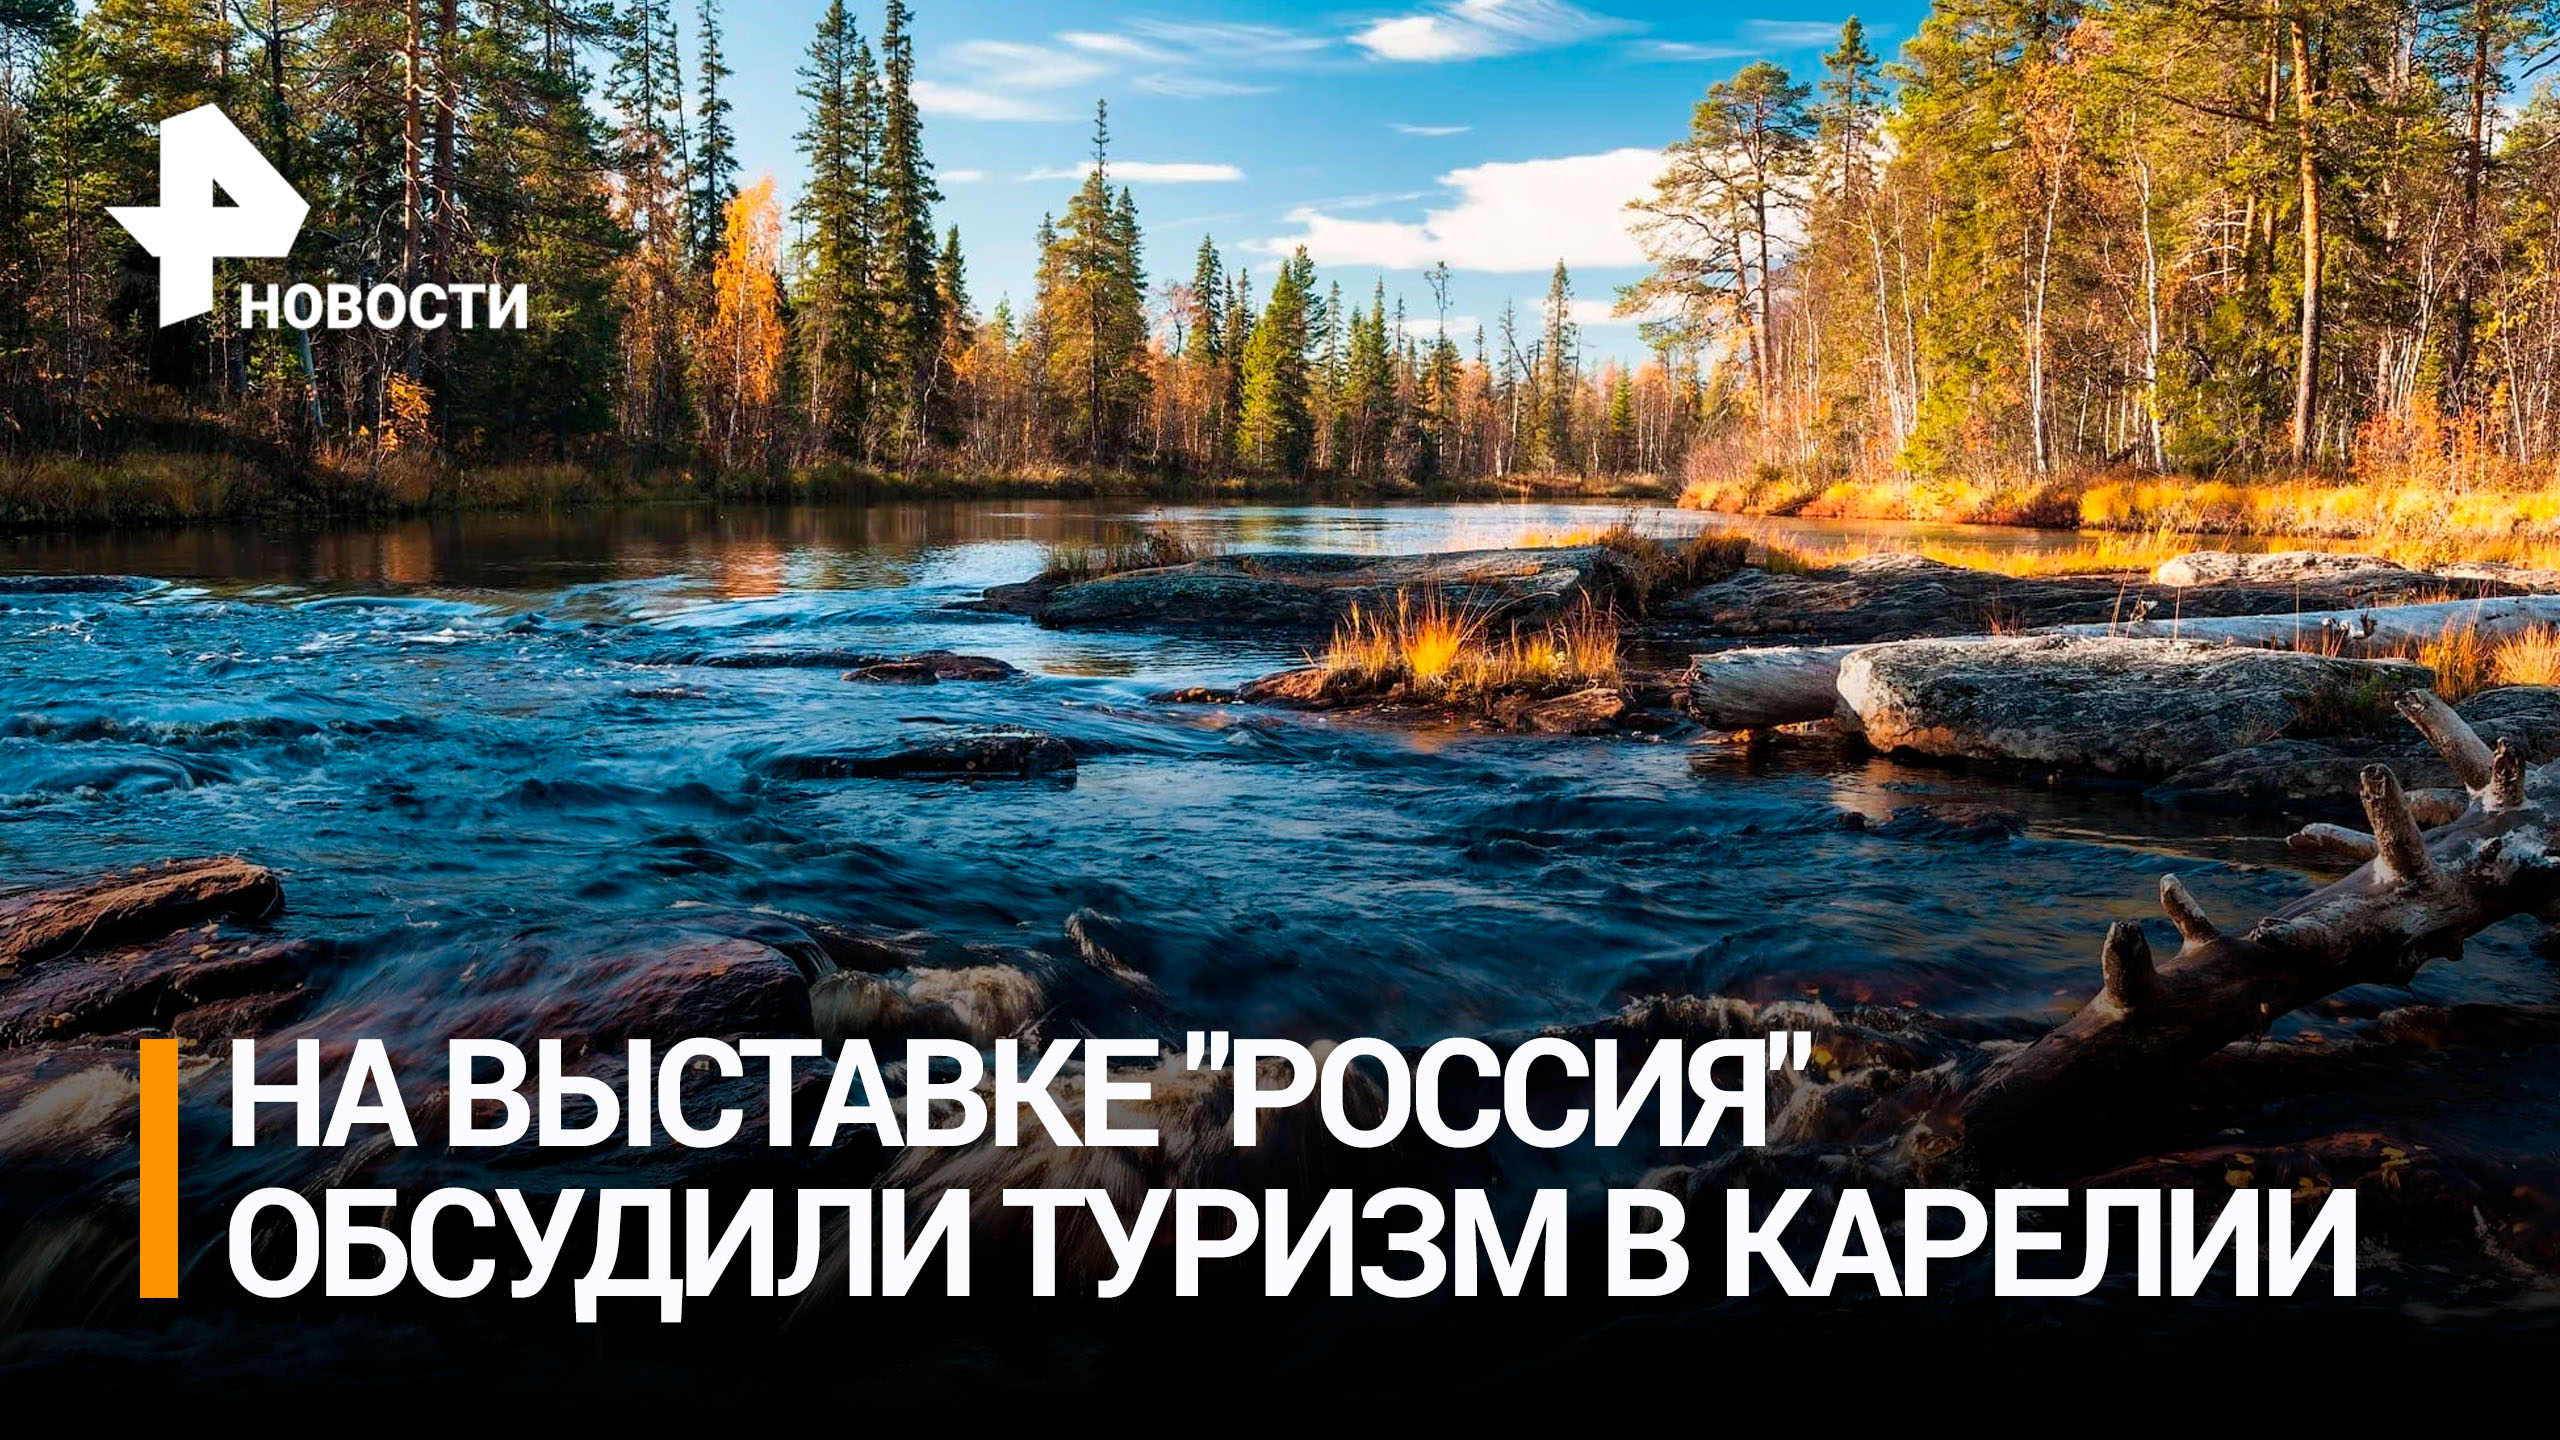 Развитие туризма в Карелии обсудили на выставке "Россия" / РЕН Новости